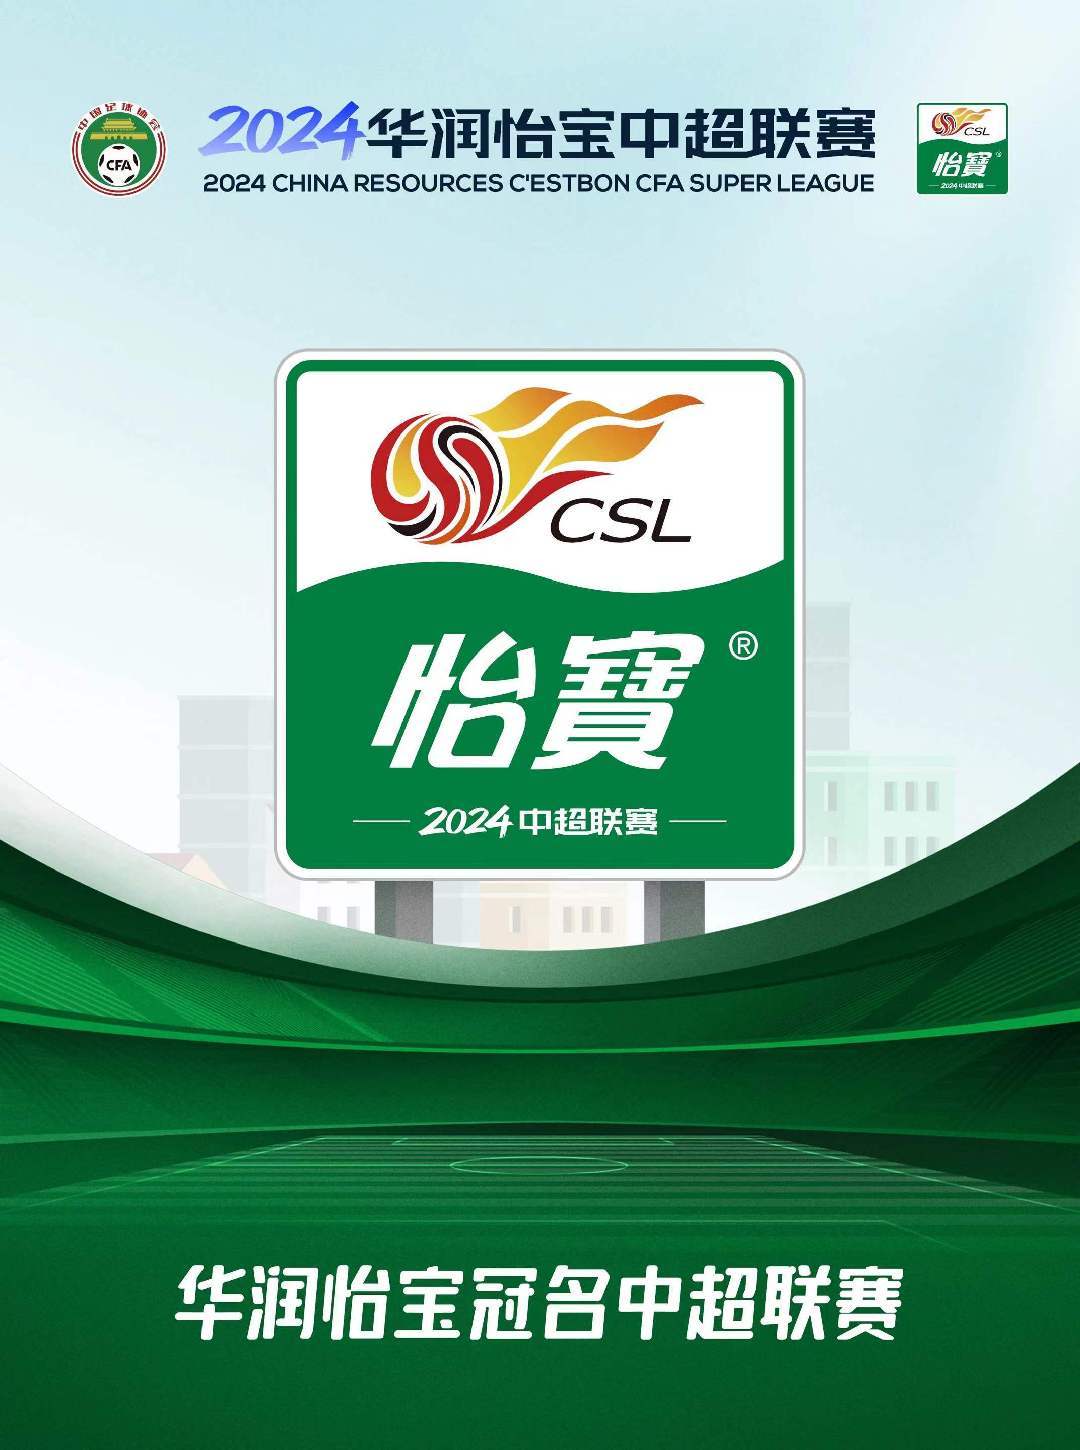 中国足球-官宣中国足球！华润怡宝冠名2024中国足球协会超级联赛